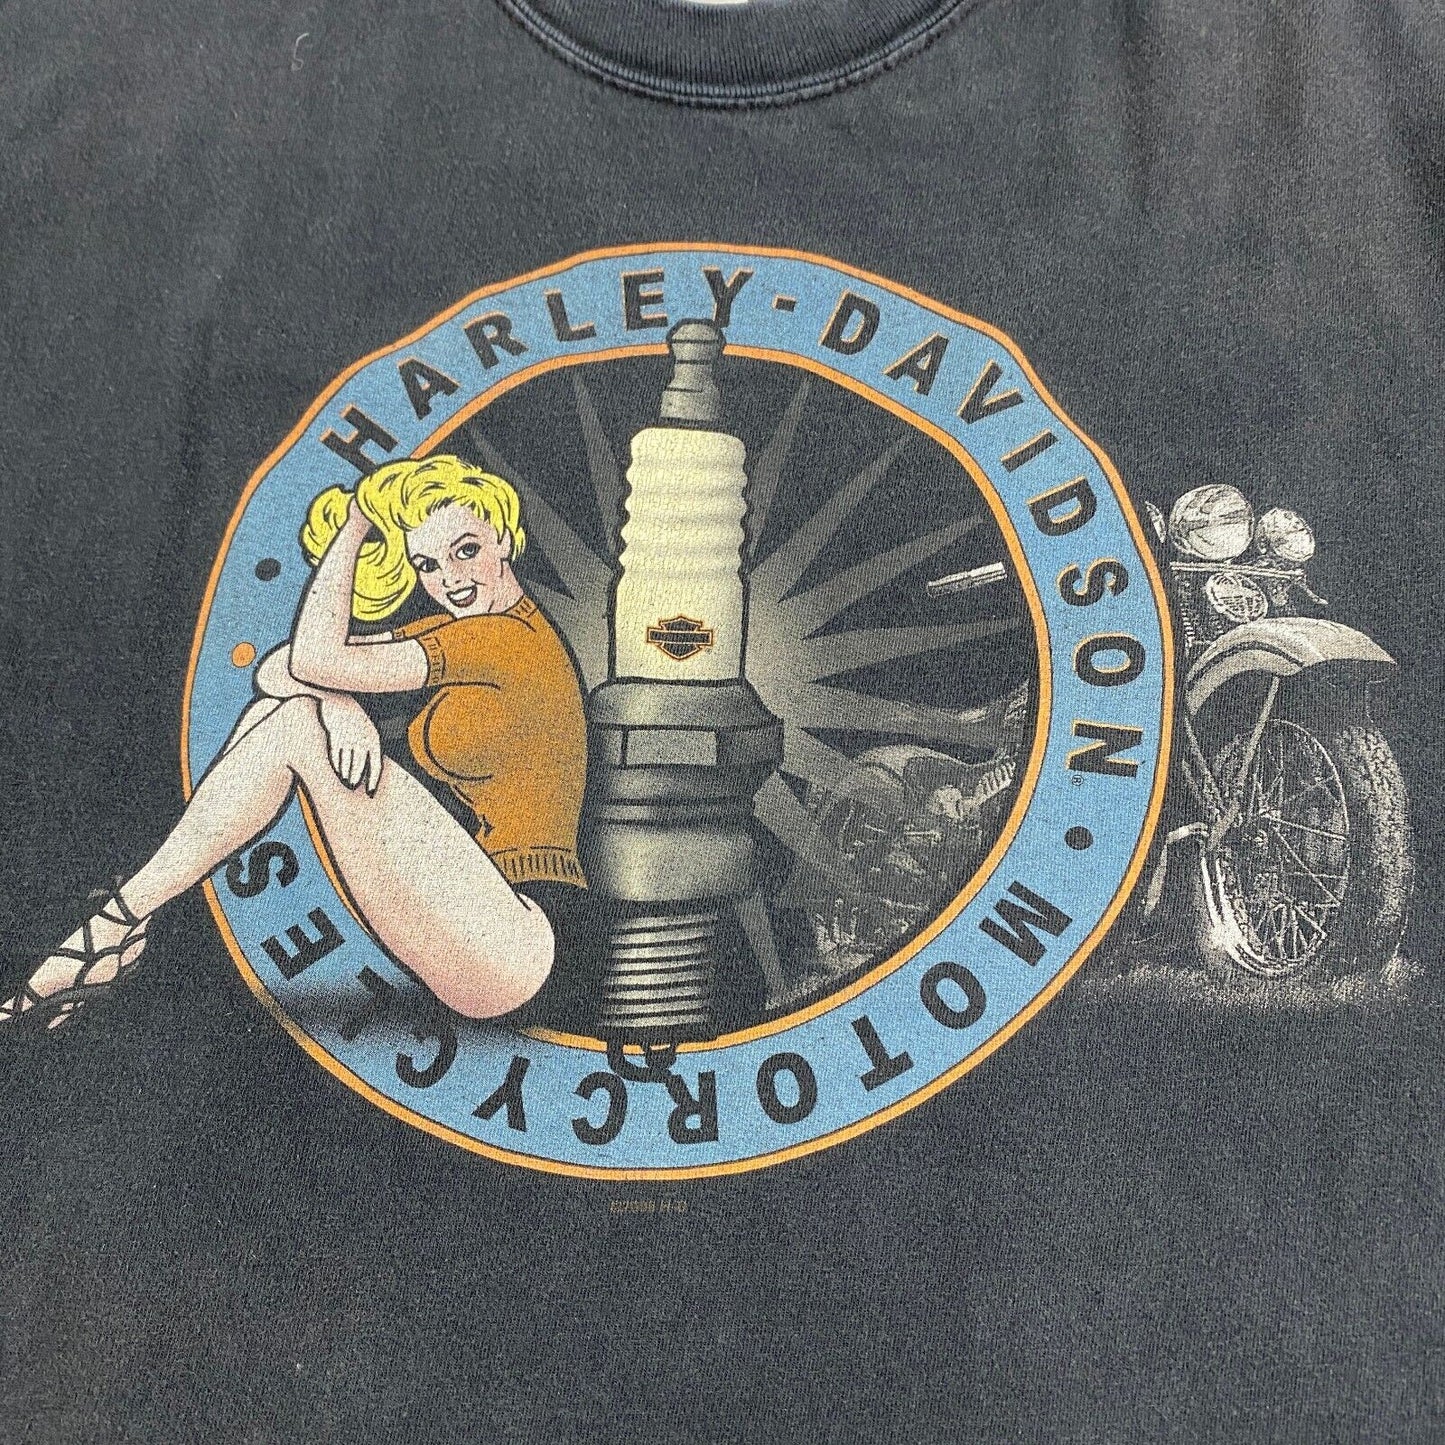 VINTAGE Harley Davidson Pin Up Girl Sleeveless T-Shirt sz Large Men